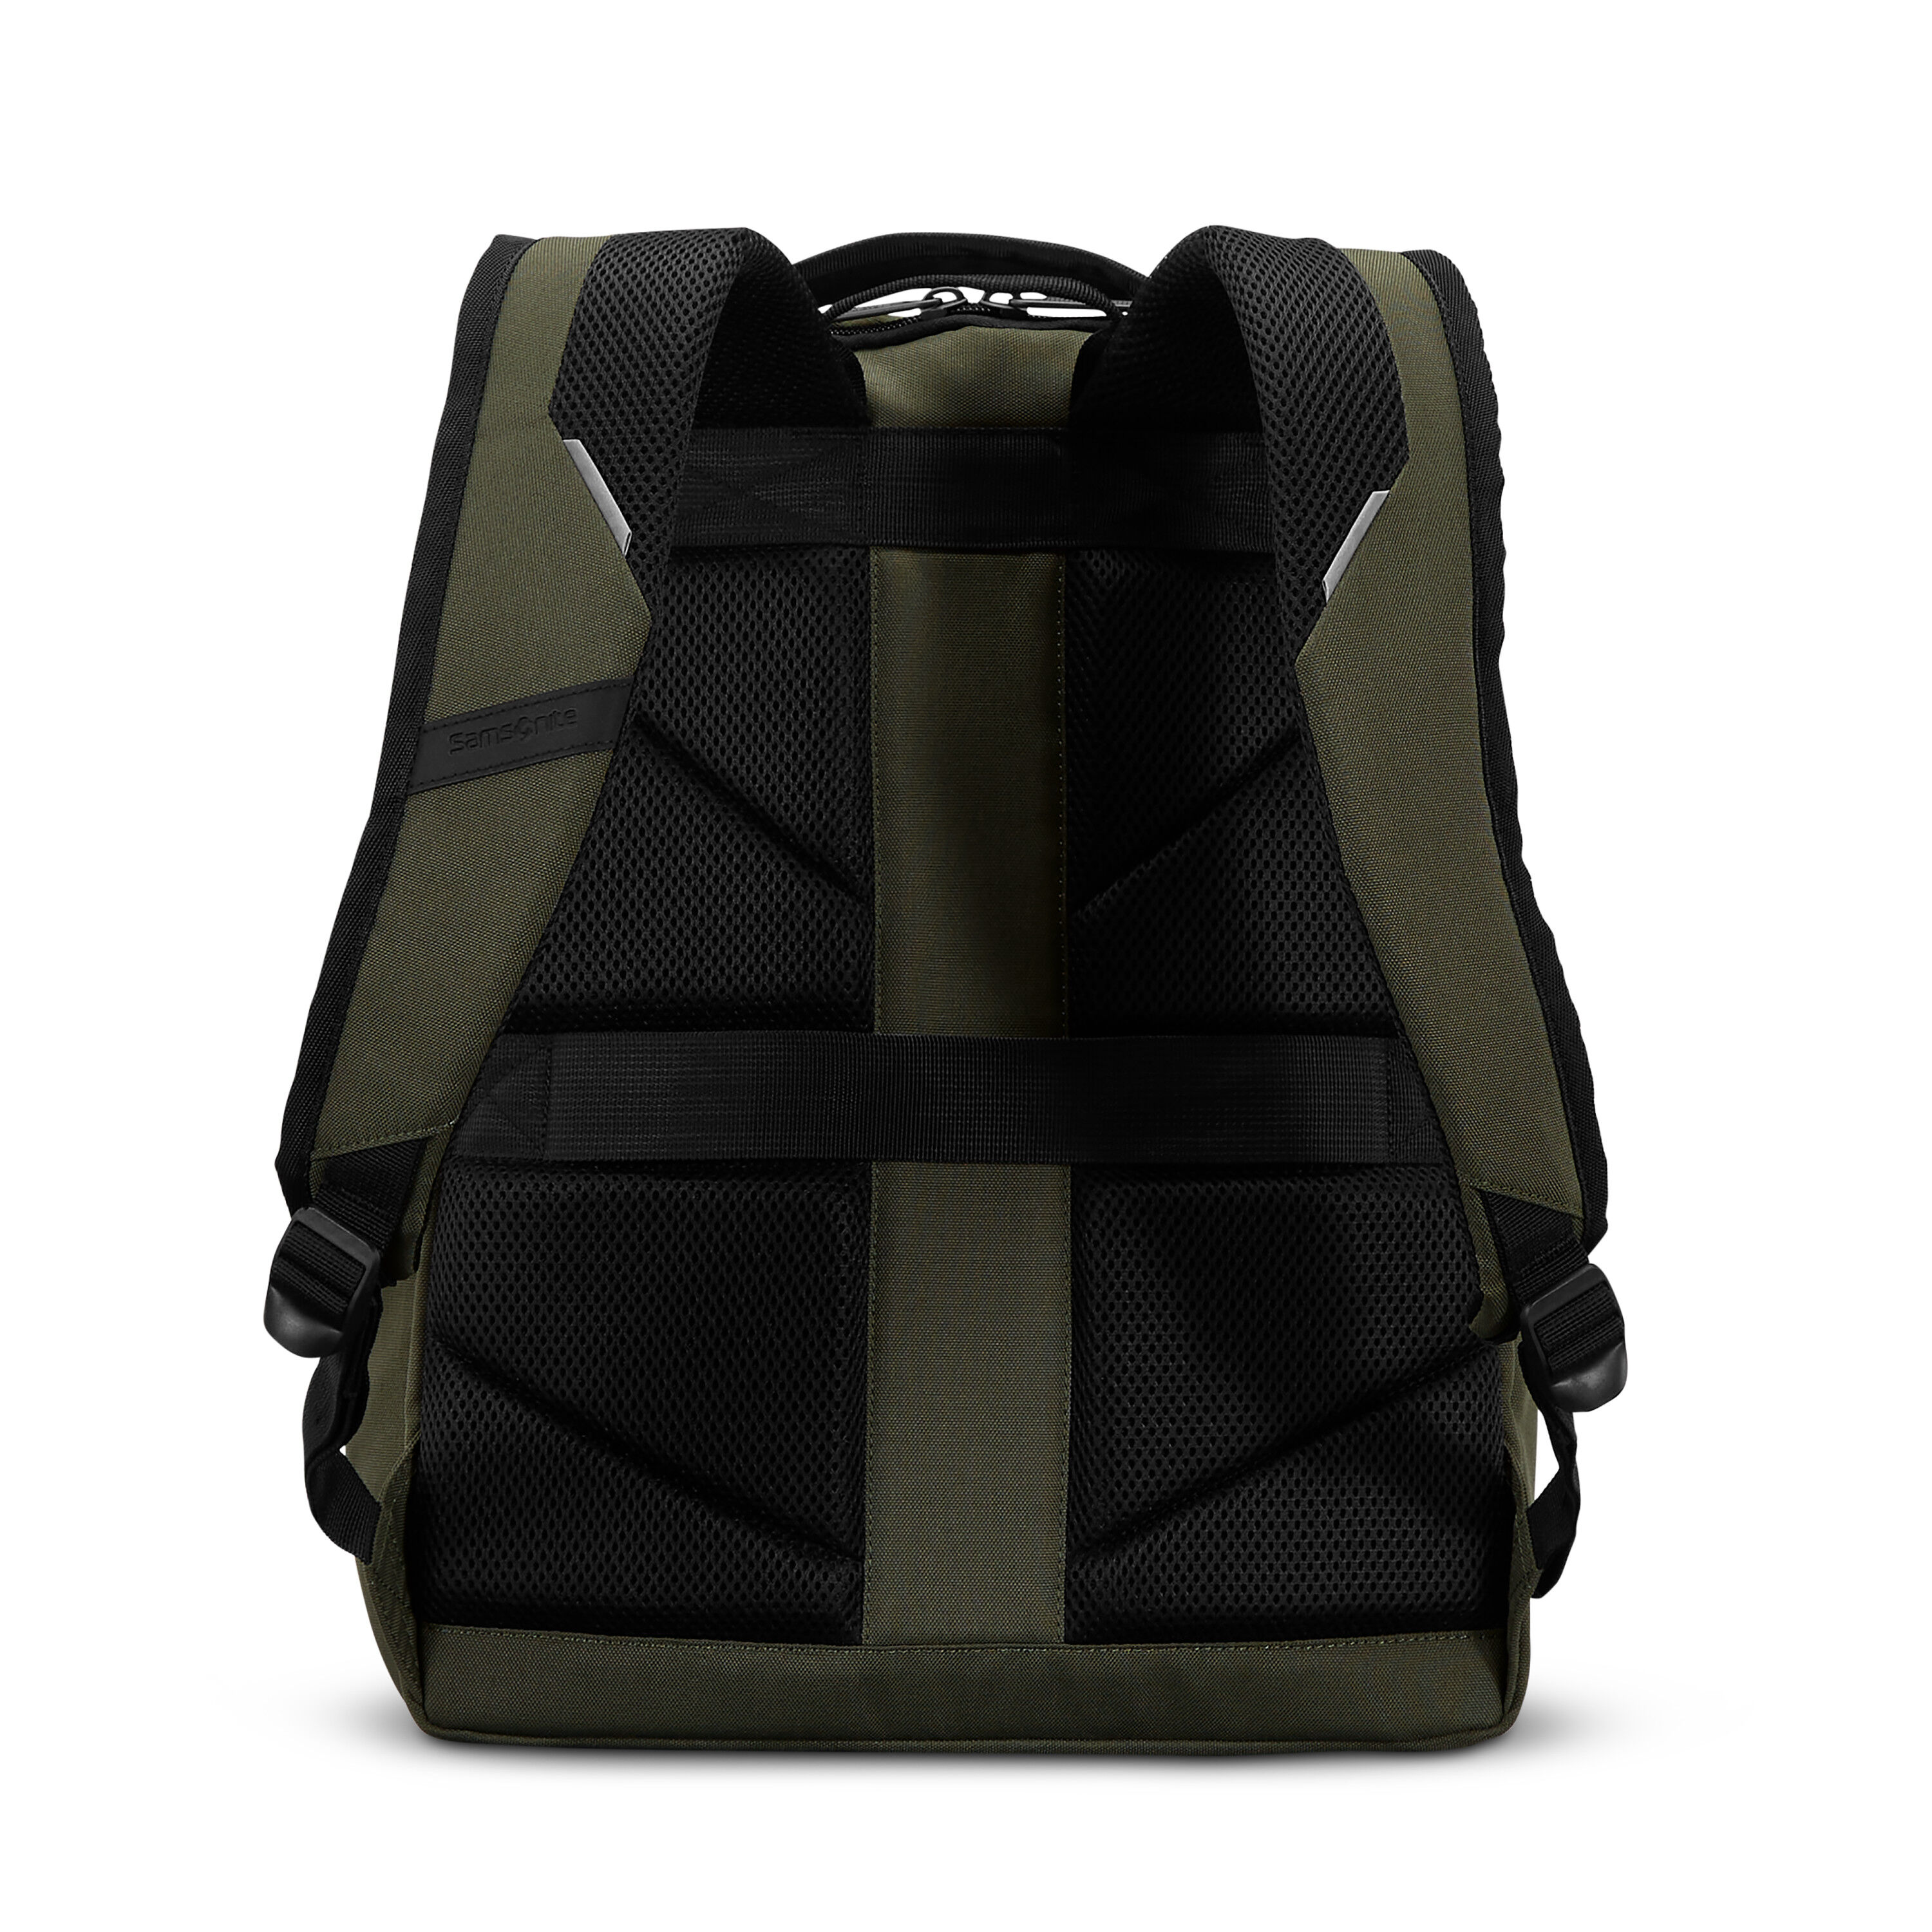 Buy Carrier GSD Backpack for USD 62.99 | Samsonite US